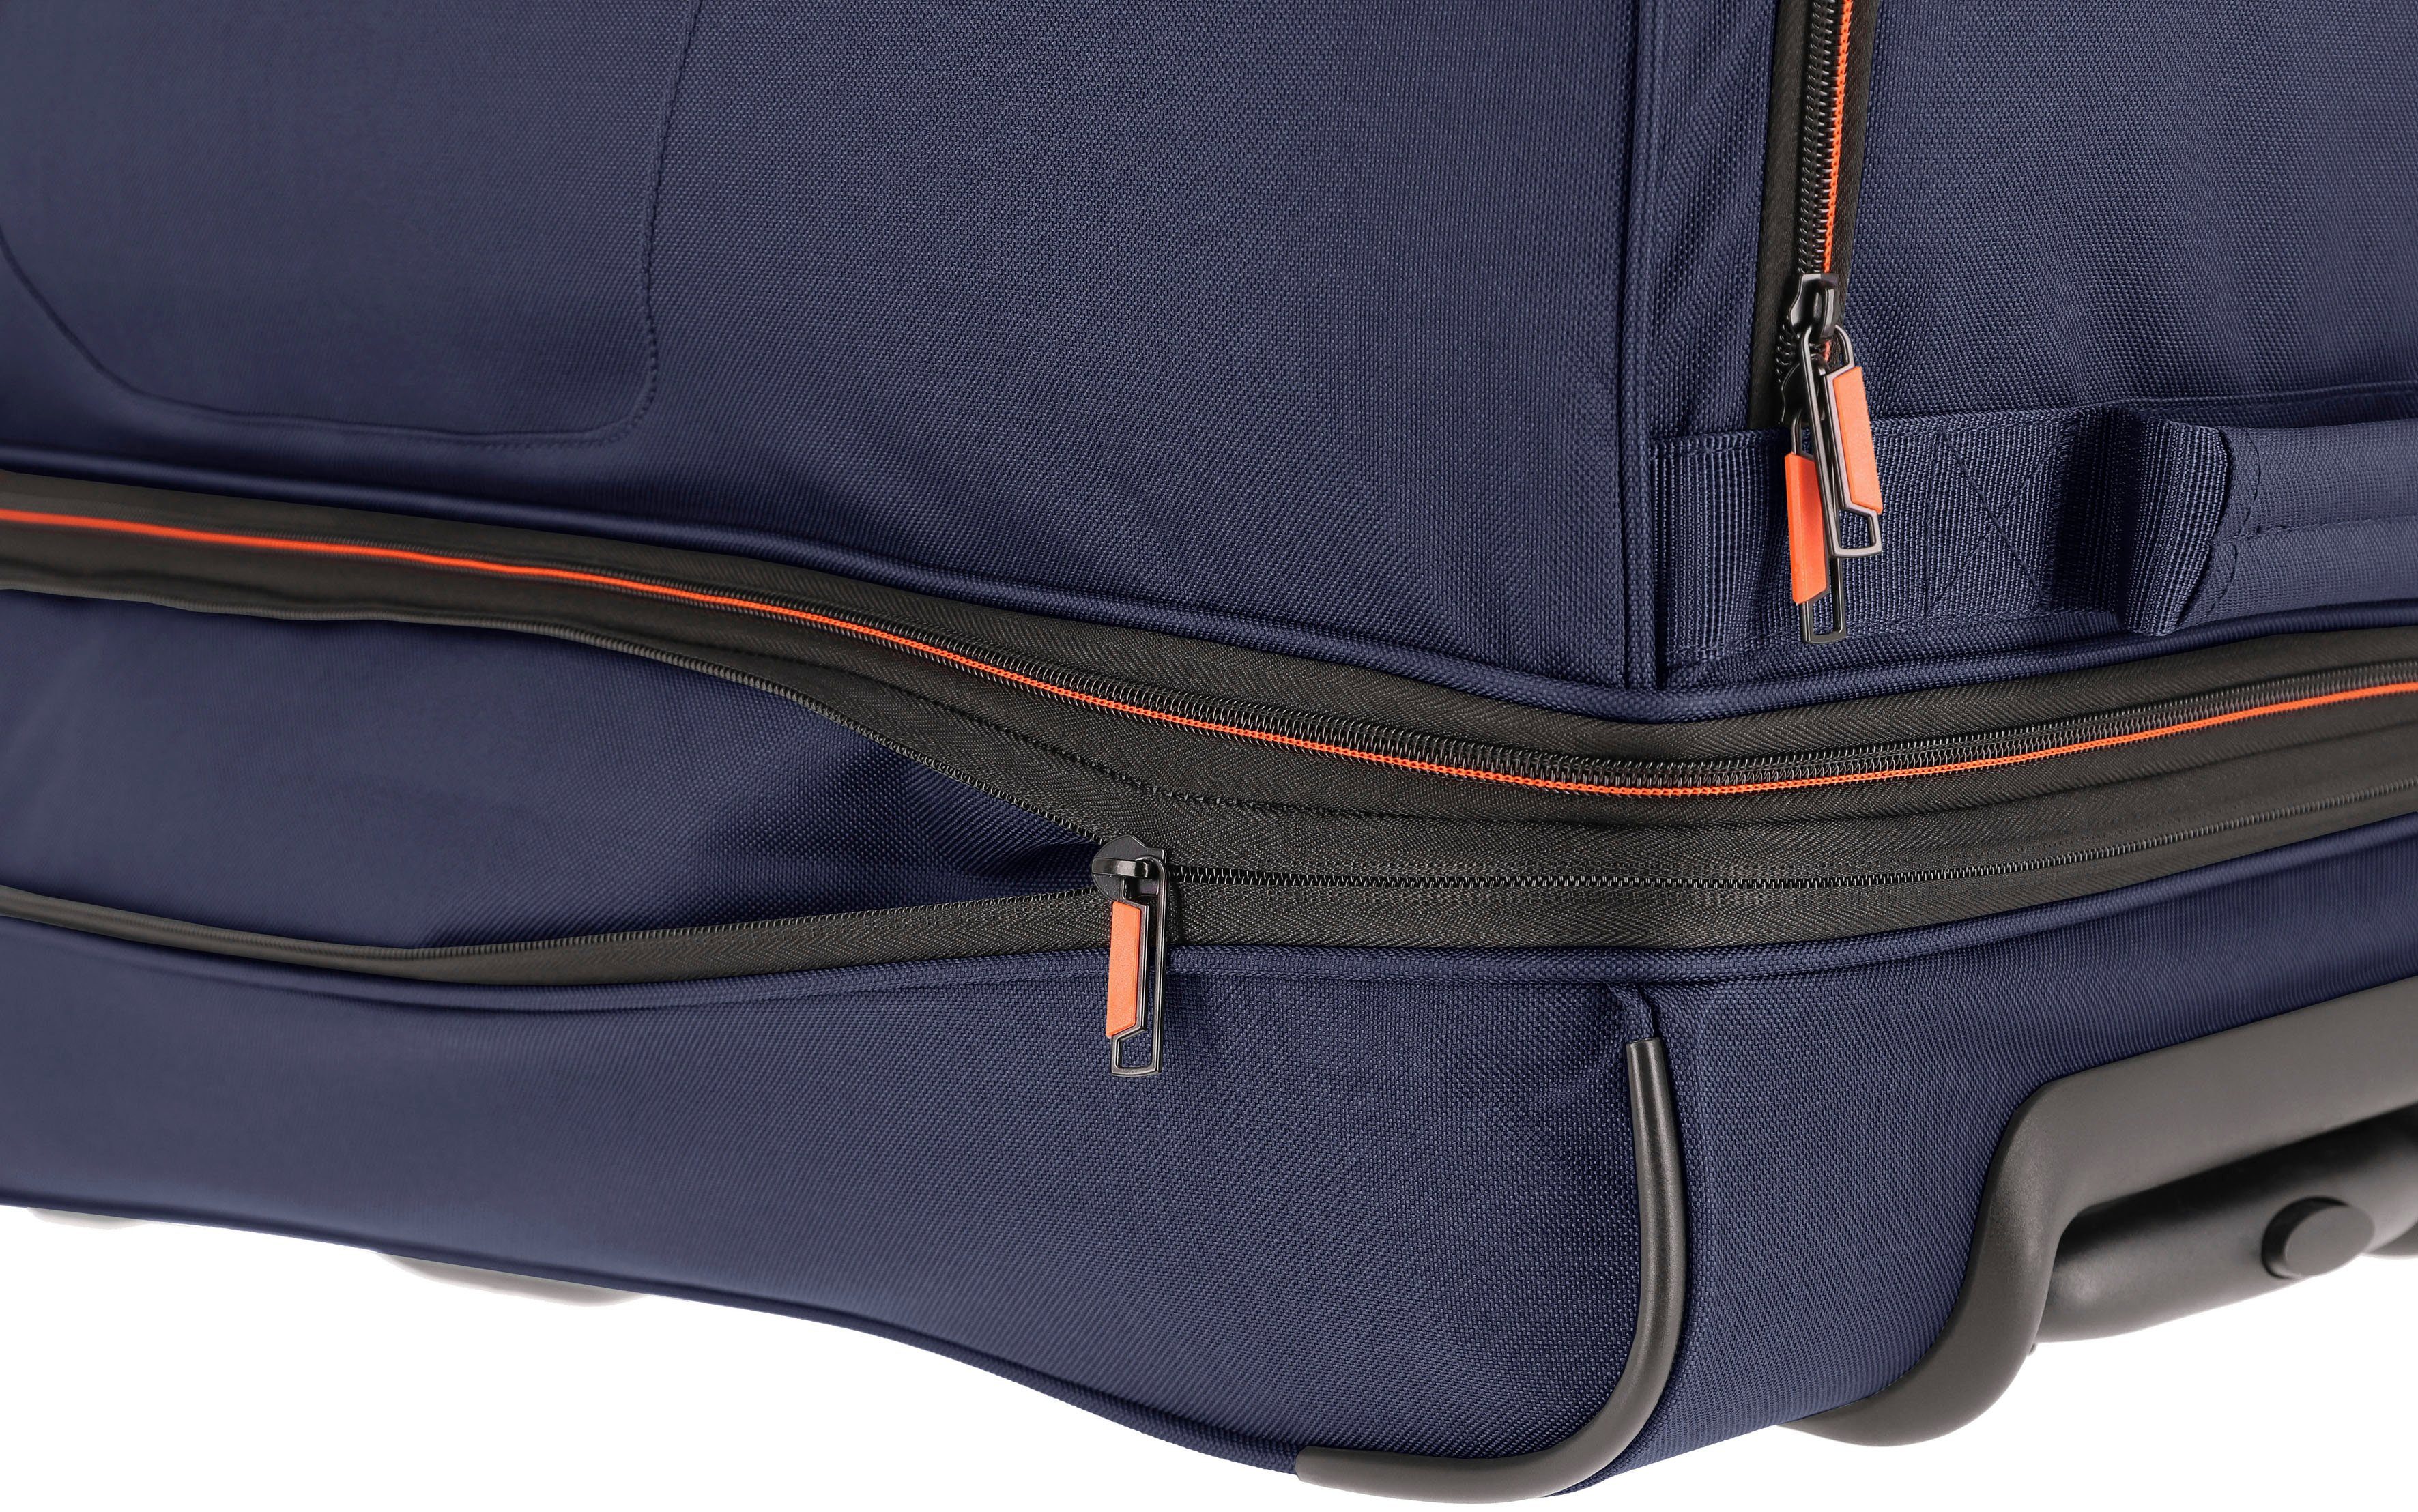 Trolleyfunktion mit Reisetasche Basics, travelite 70 marine-orange und Volumenerweiterung cm,